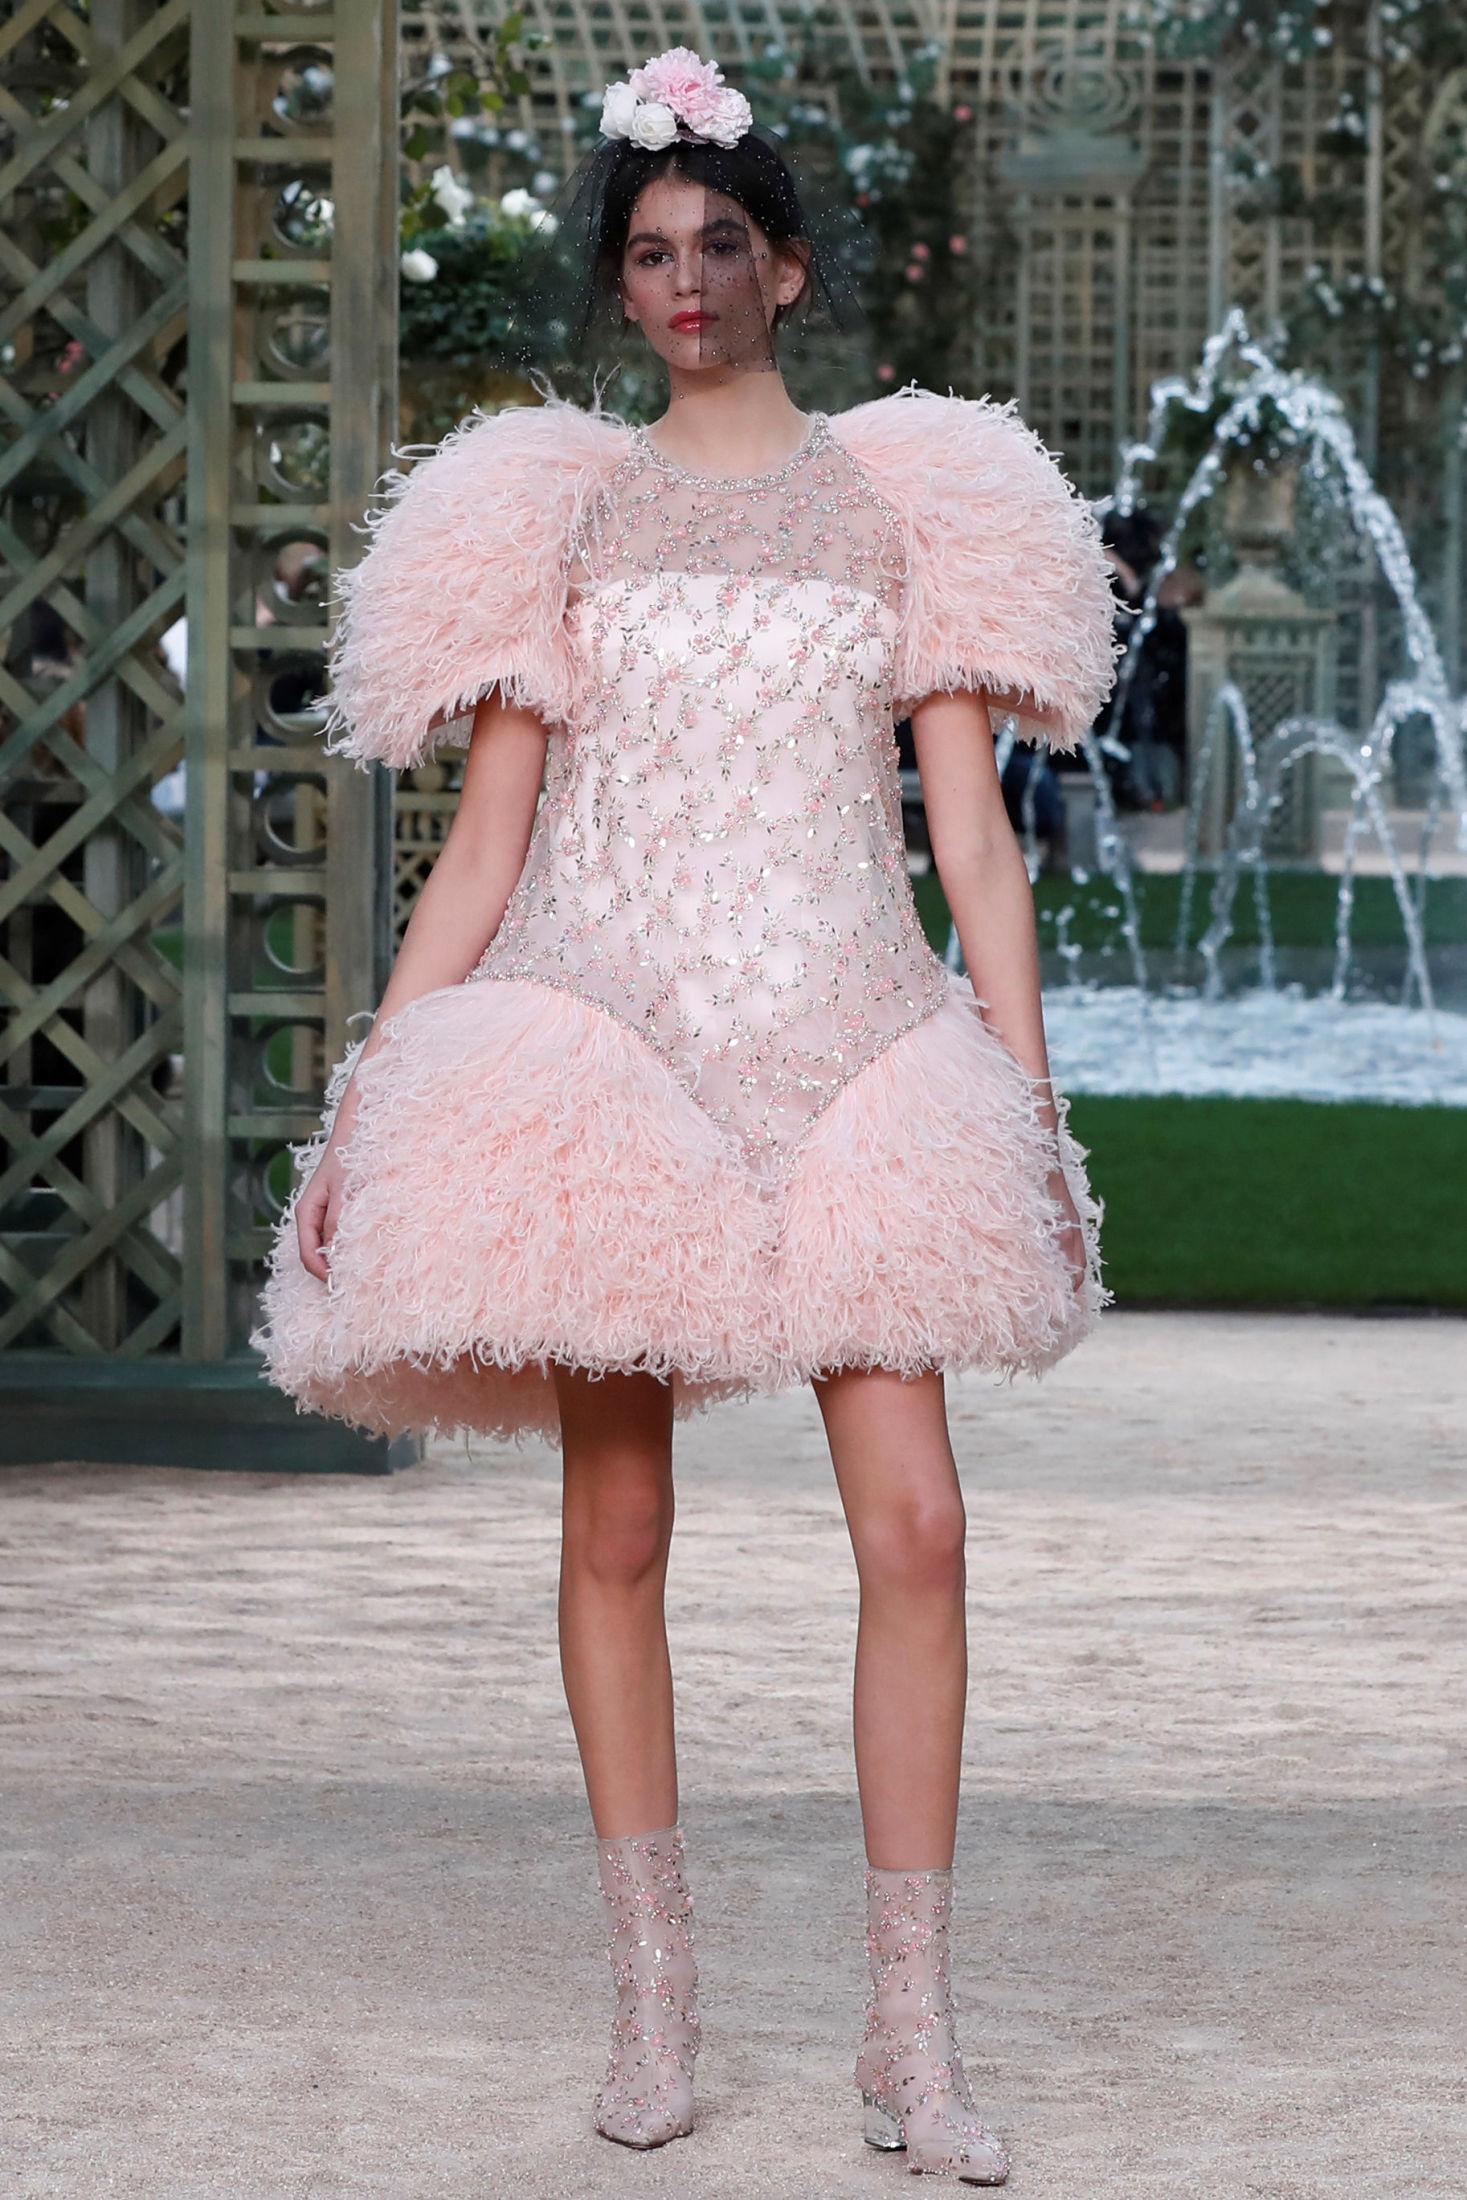 EKSKLUSIVT: Chanels couture-klær er noen av de mest eksklusive i bransjen. Foto: Reuters.